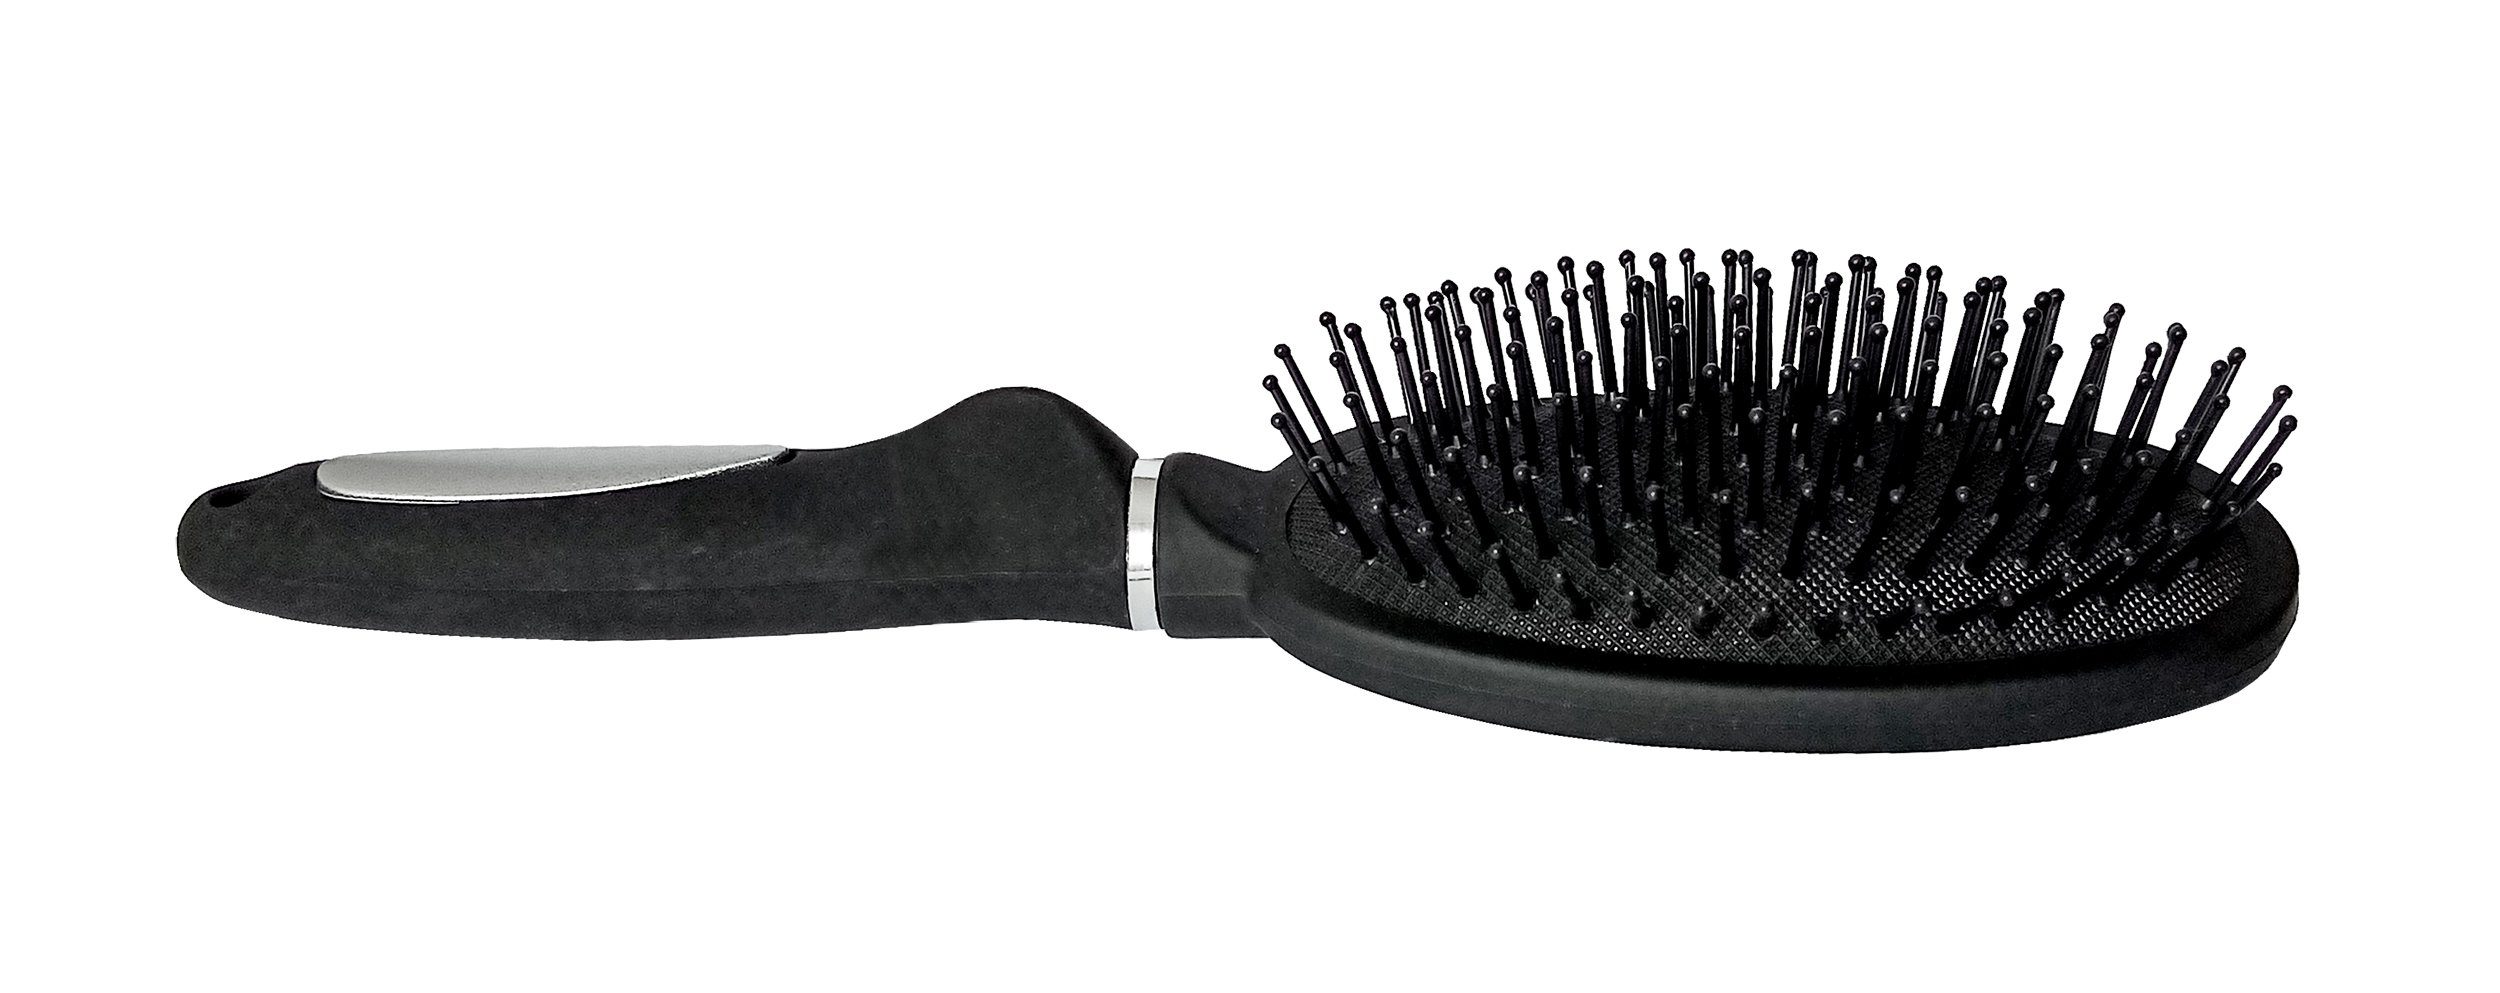 mit HAARBÜRSTE Noppen Massage Haarbürste (Allzweckbürste), Lifetime schwarz Haarpflege Kamm Haar 58 Allzweckbürste Fönbürste Bürste Massagebürste Allzweck